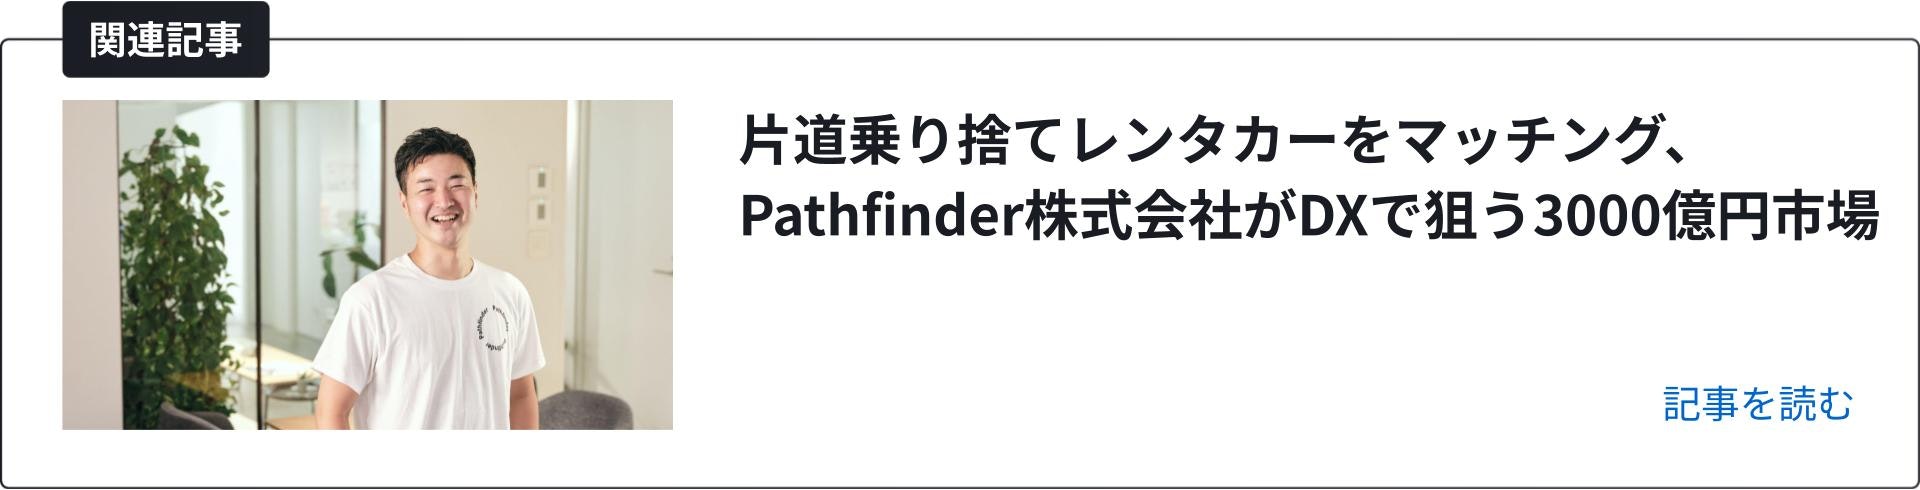 関連記事 Pathfinder